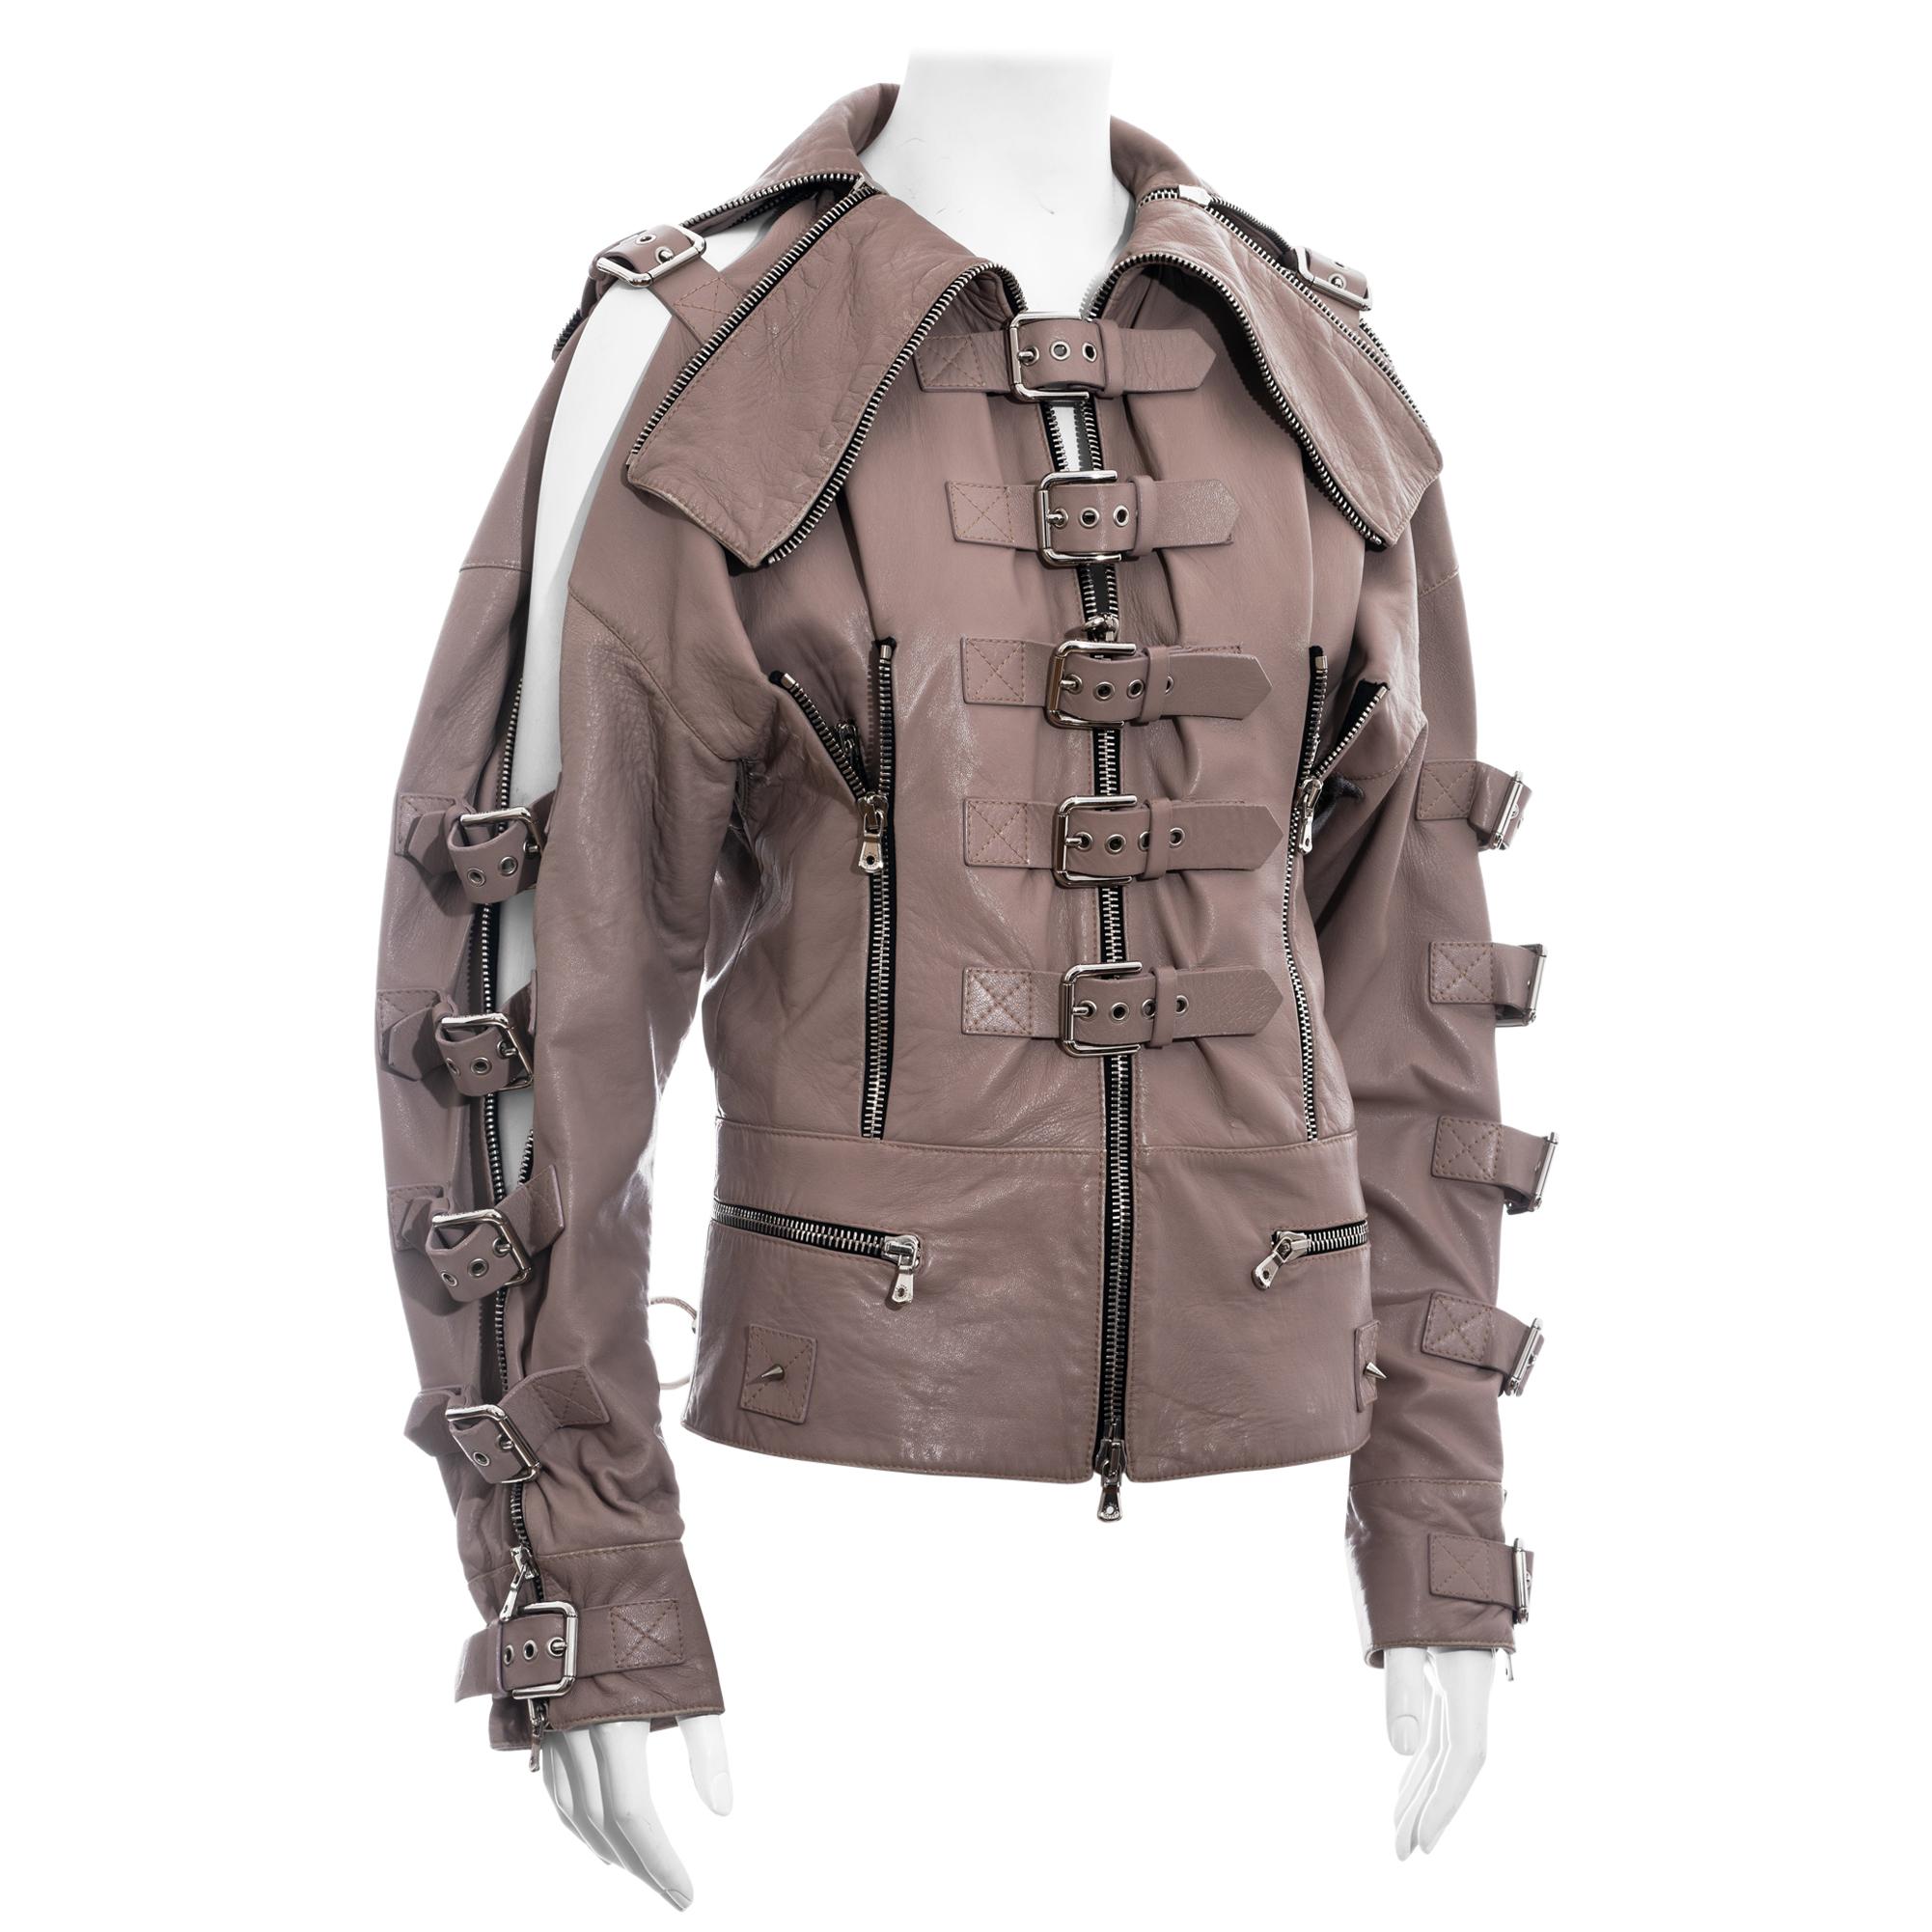 Dolce & Gabbana mauve leather buckled bondage jacket, ss 2003